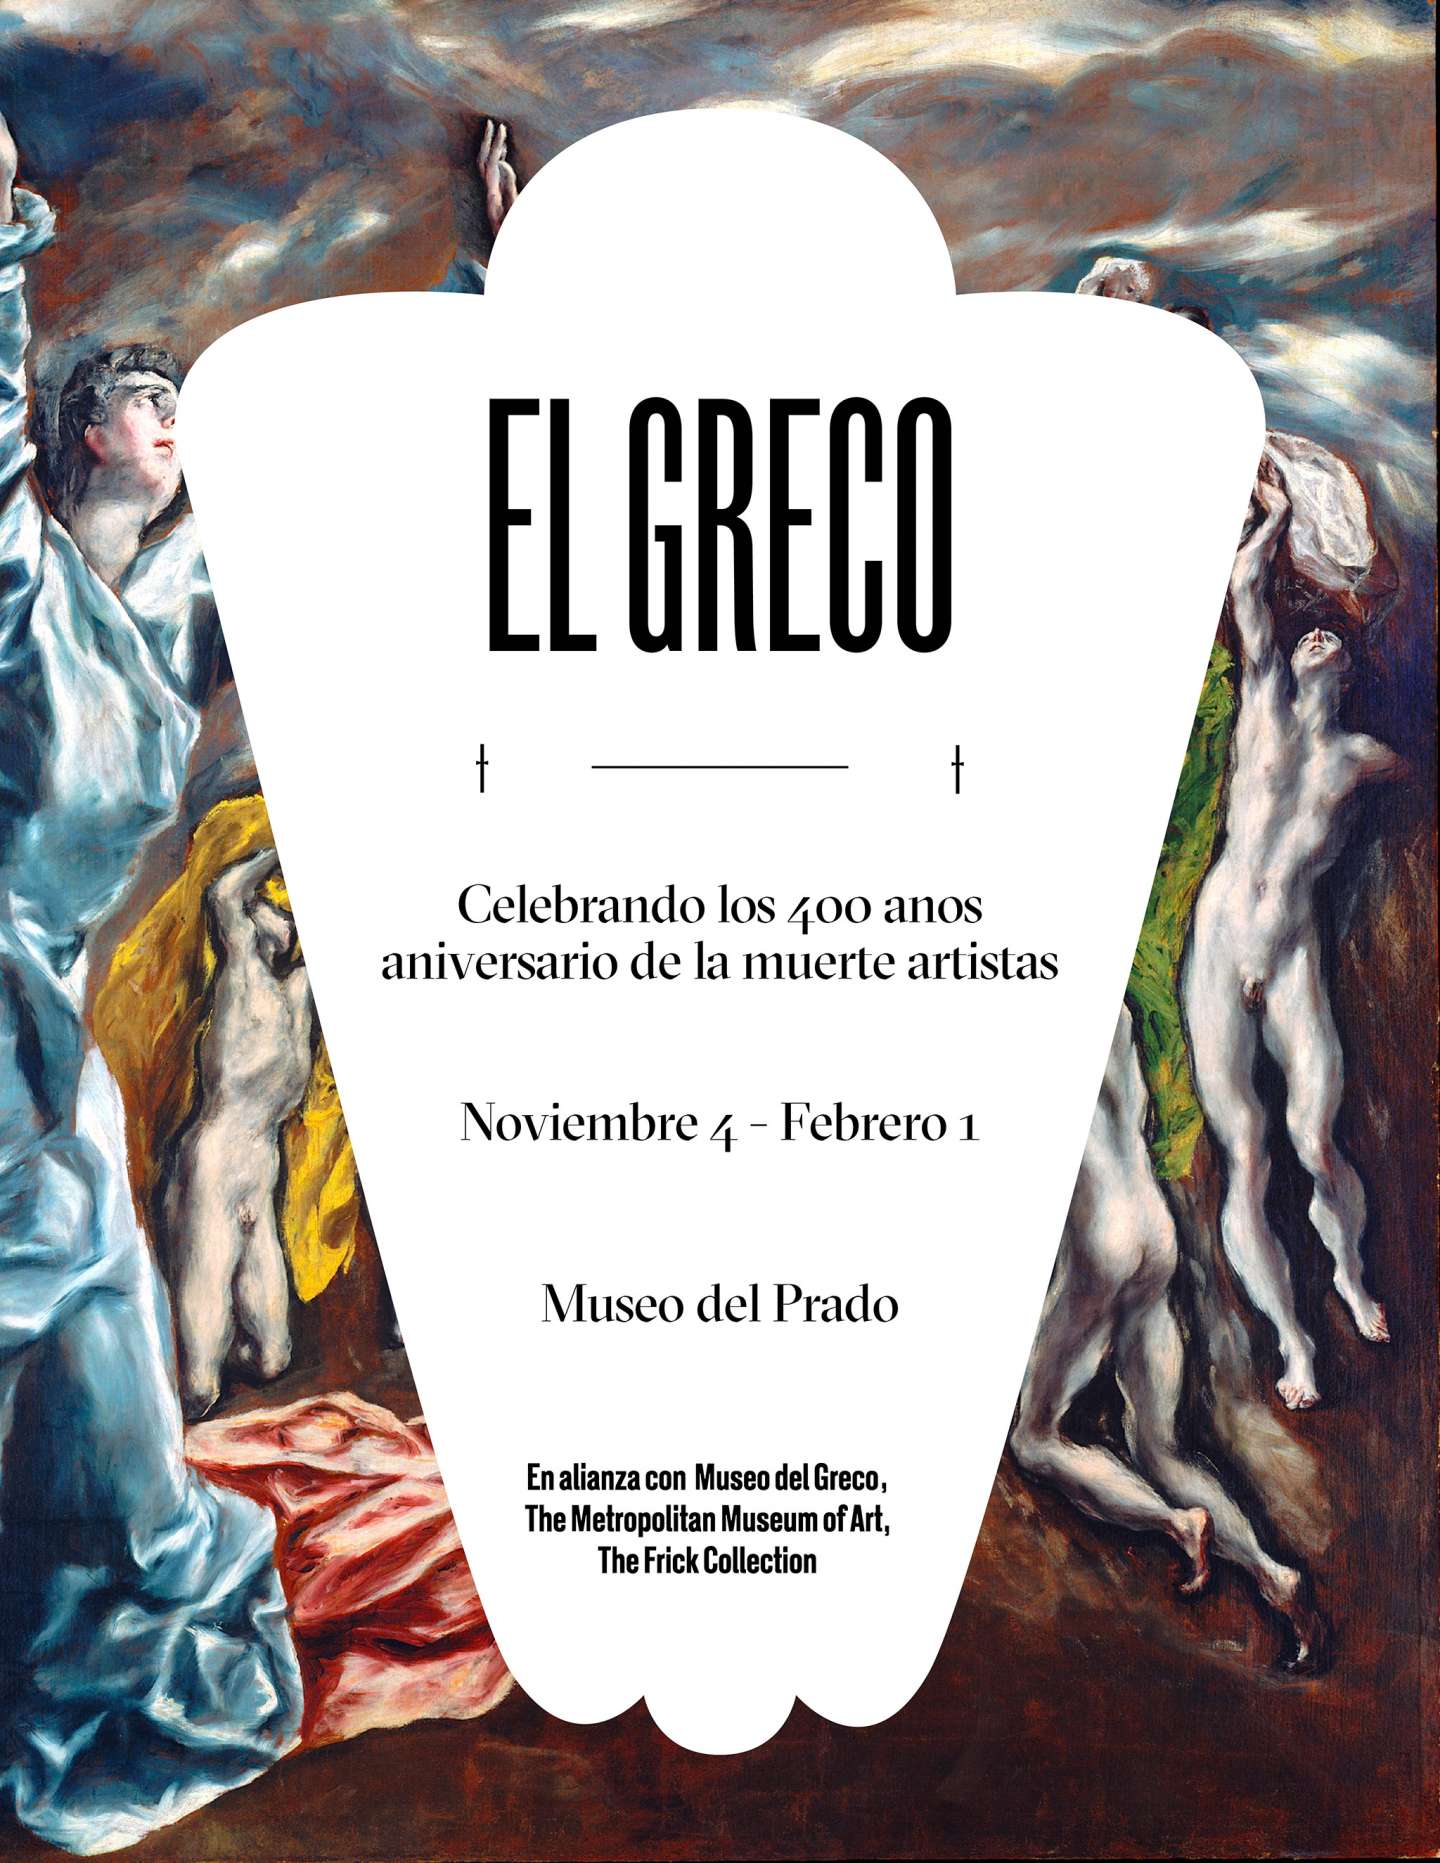 El Greco Exhibit Posters